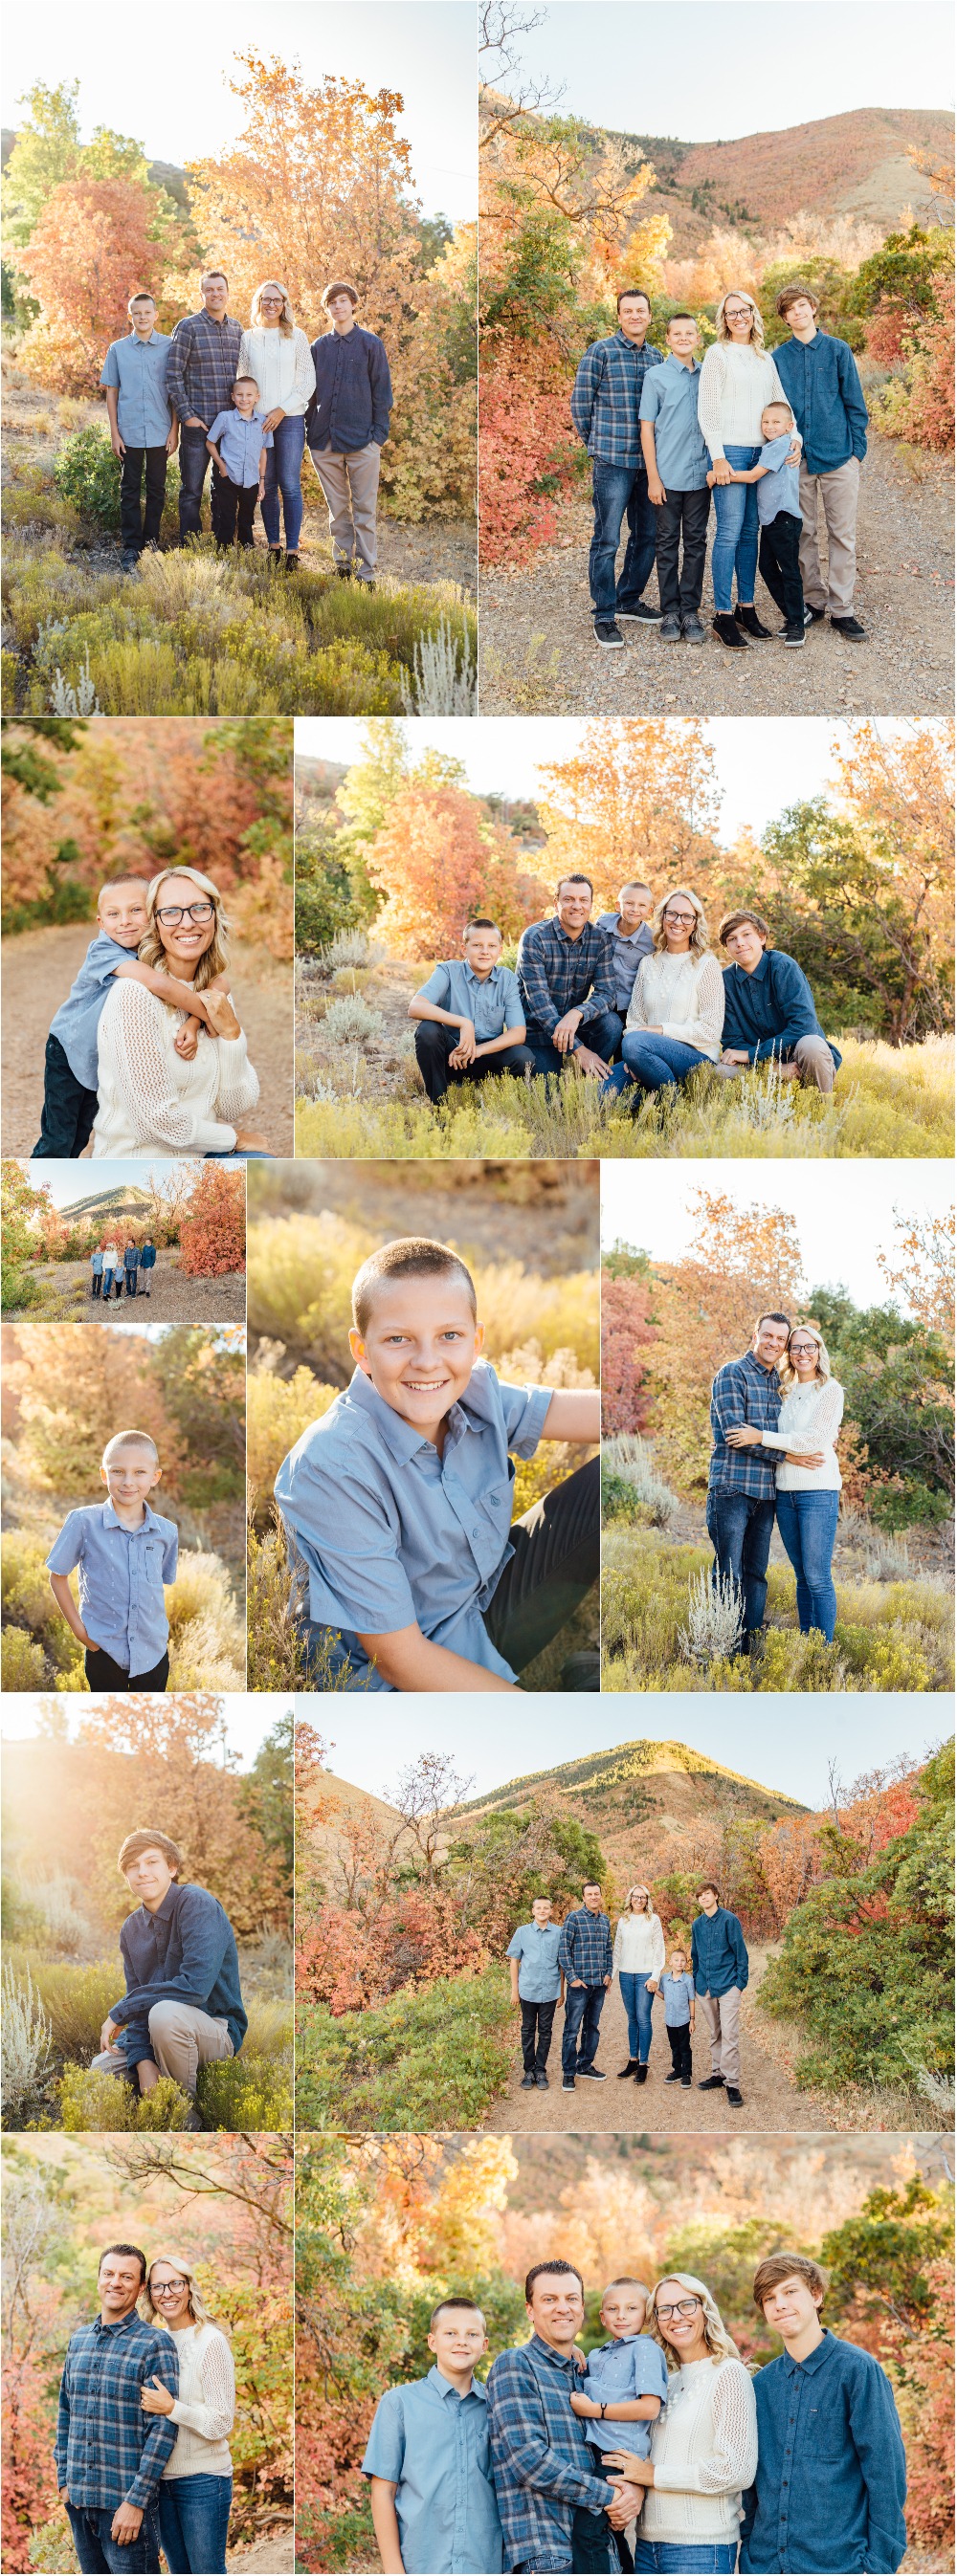 Spanish Fork Family Photographer - Decker Family